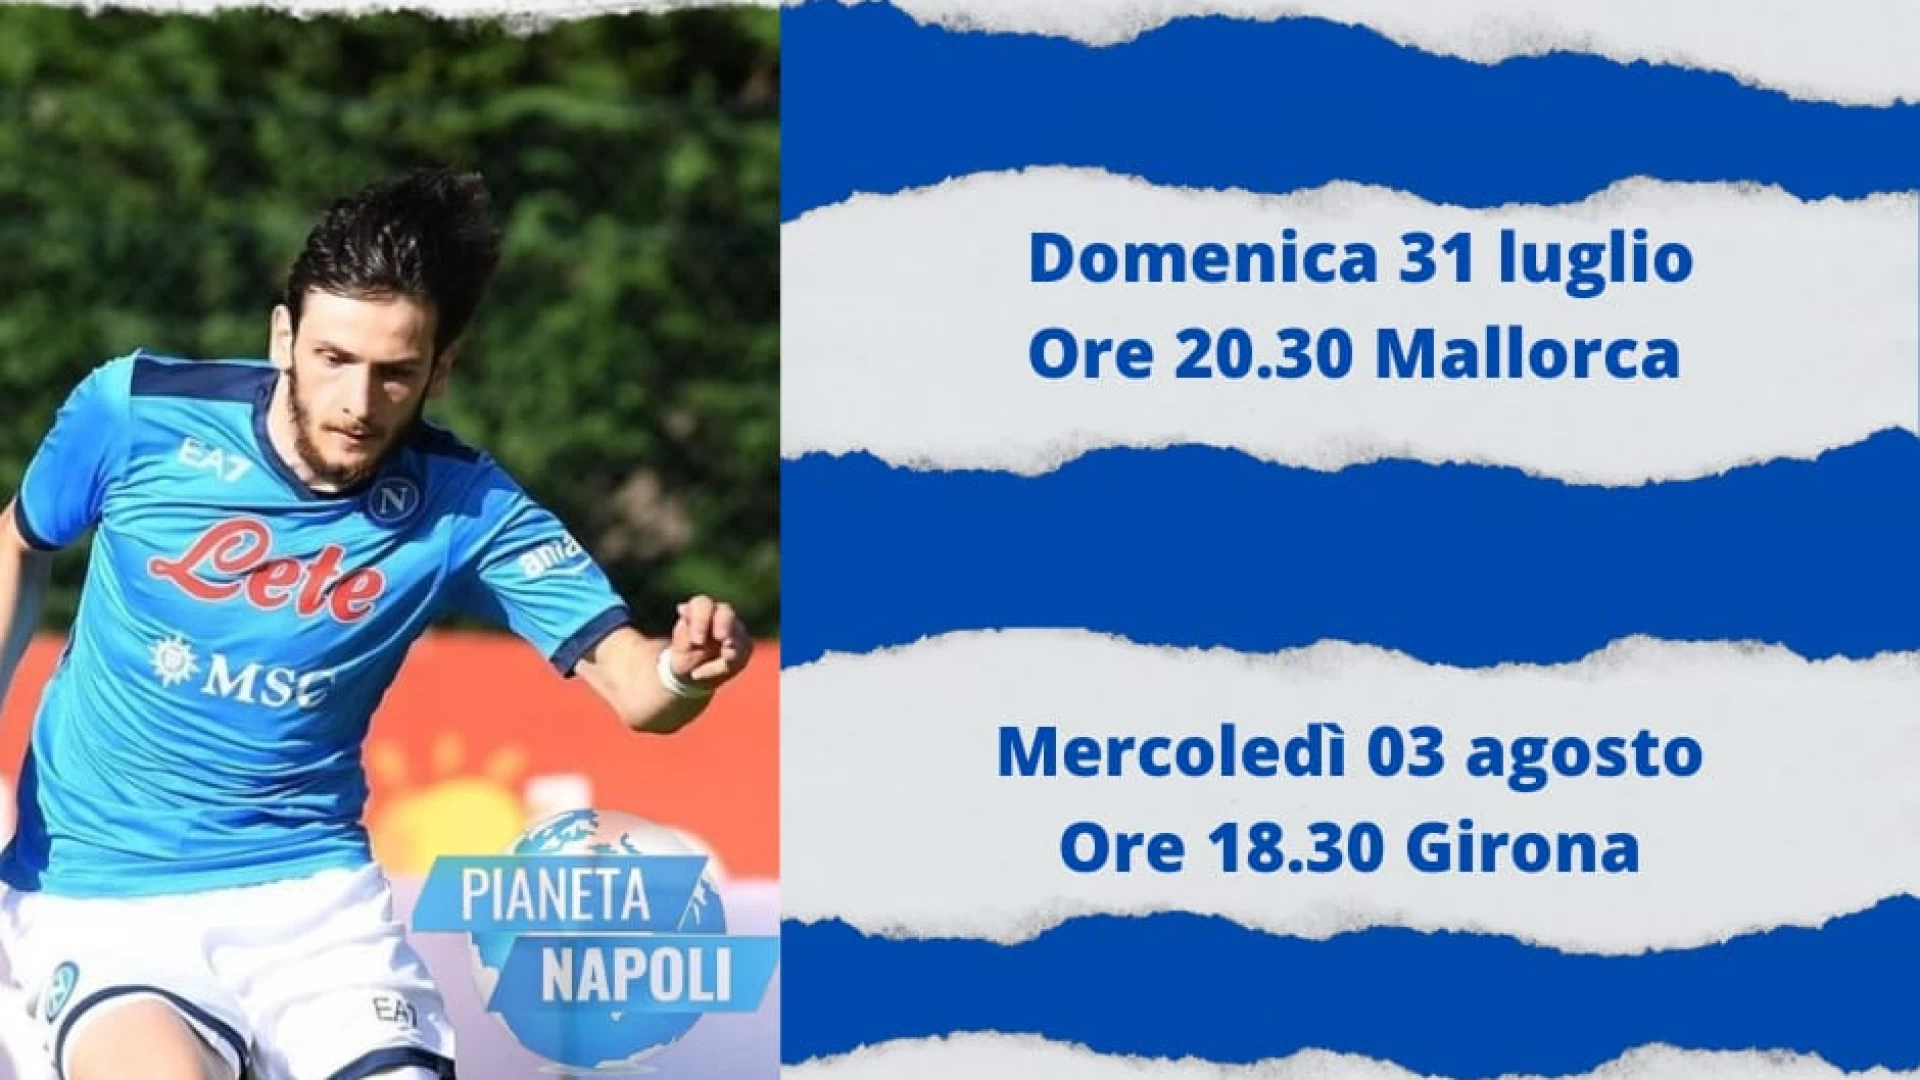 Amichevoli ritiro Napoli a Castel Di Sangro. Biglietti in vendita da oggi alle 15. Cambiano gli orari dei match contro Girona ed Espanyol.